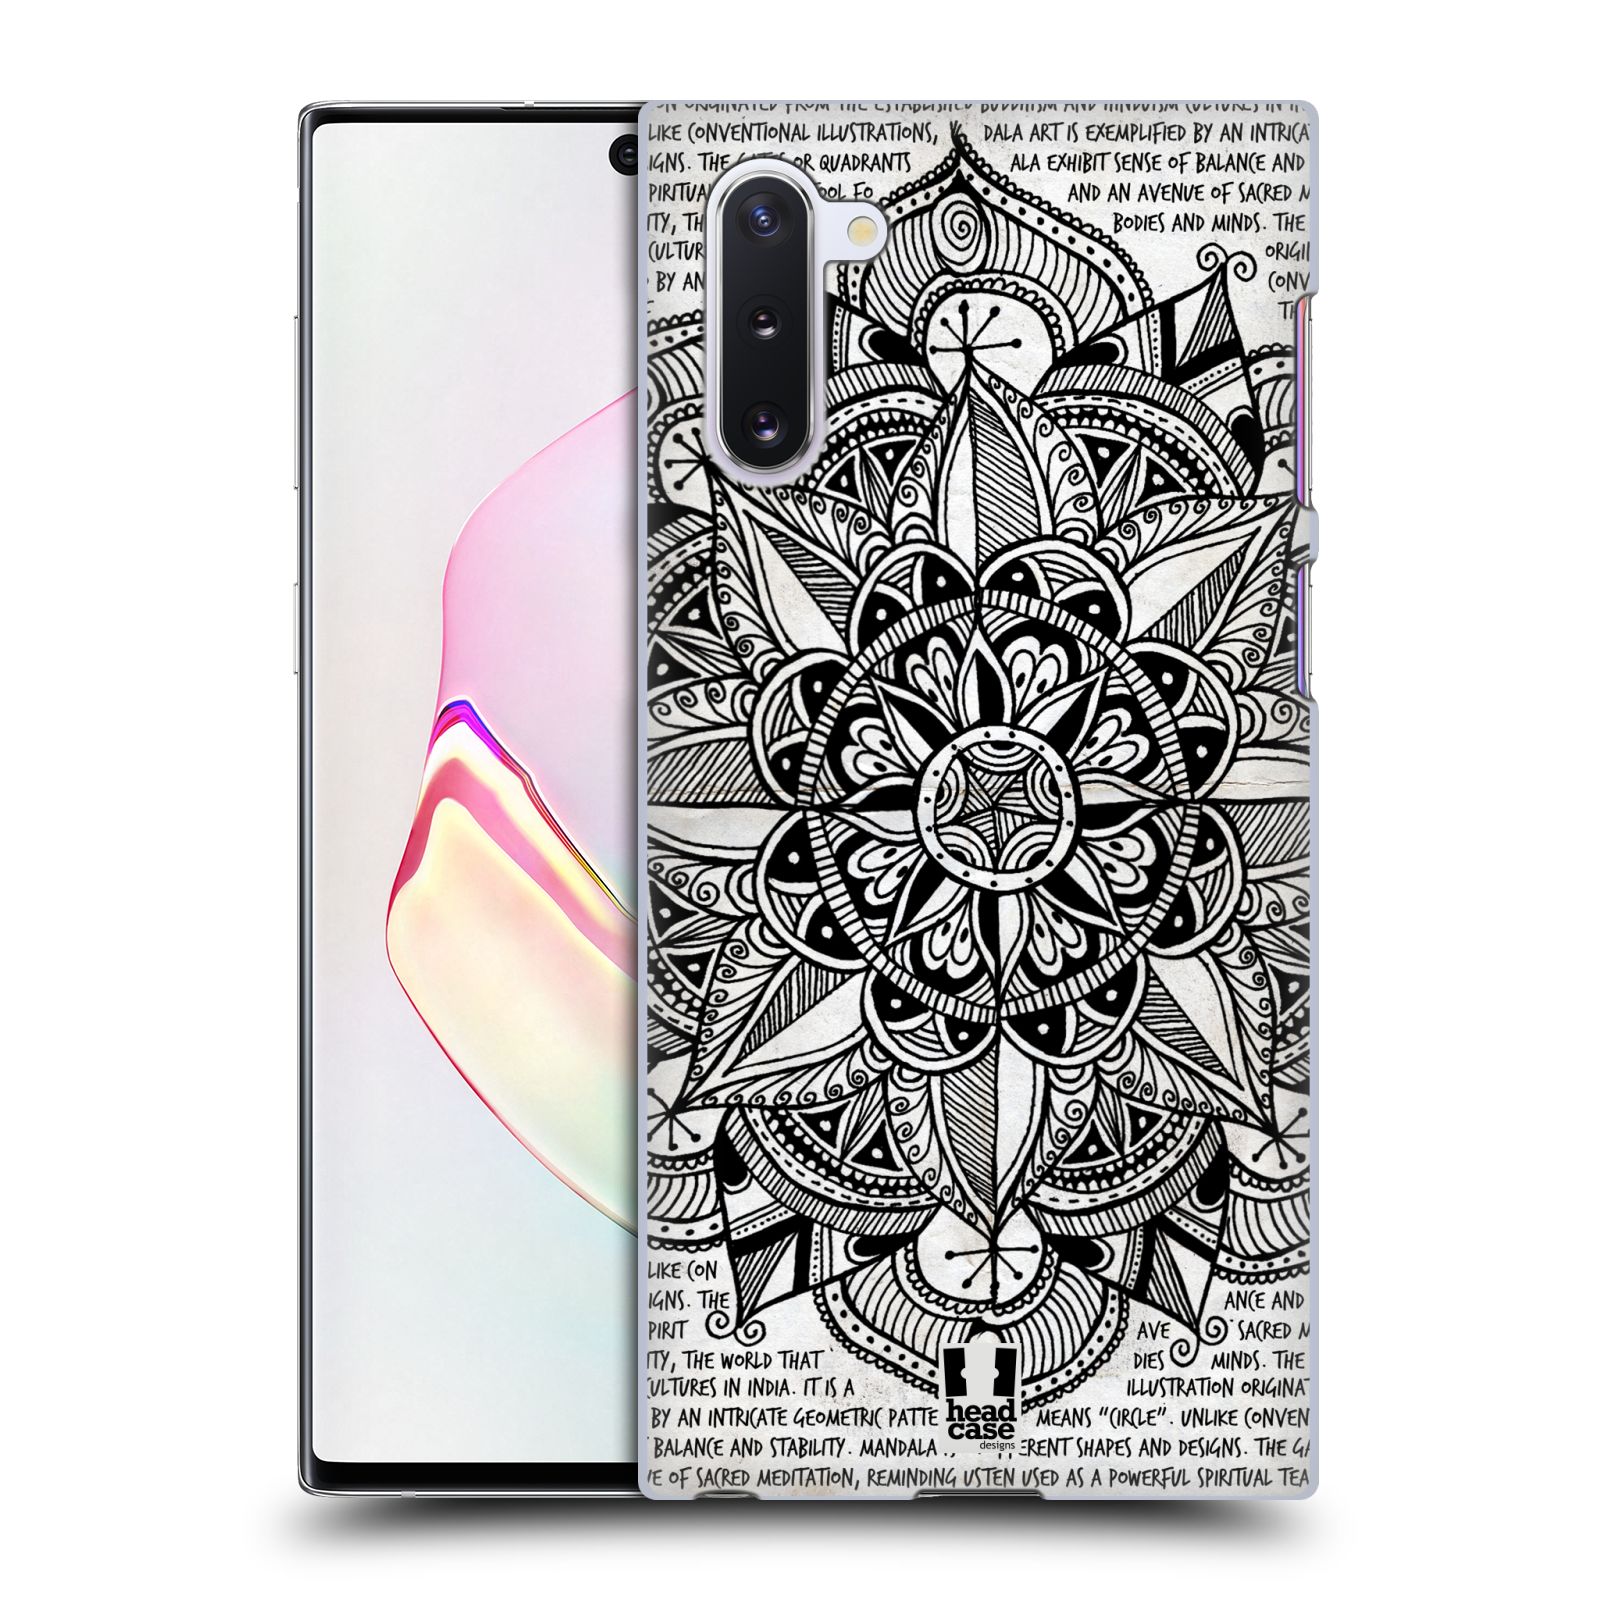 Pouzdro na mobil Samsung Galaxy Note 10 - HEAD CASE - vzor Indie Mandala slunce barevná ČERNÁ A BÍLÁ MAPA